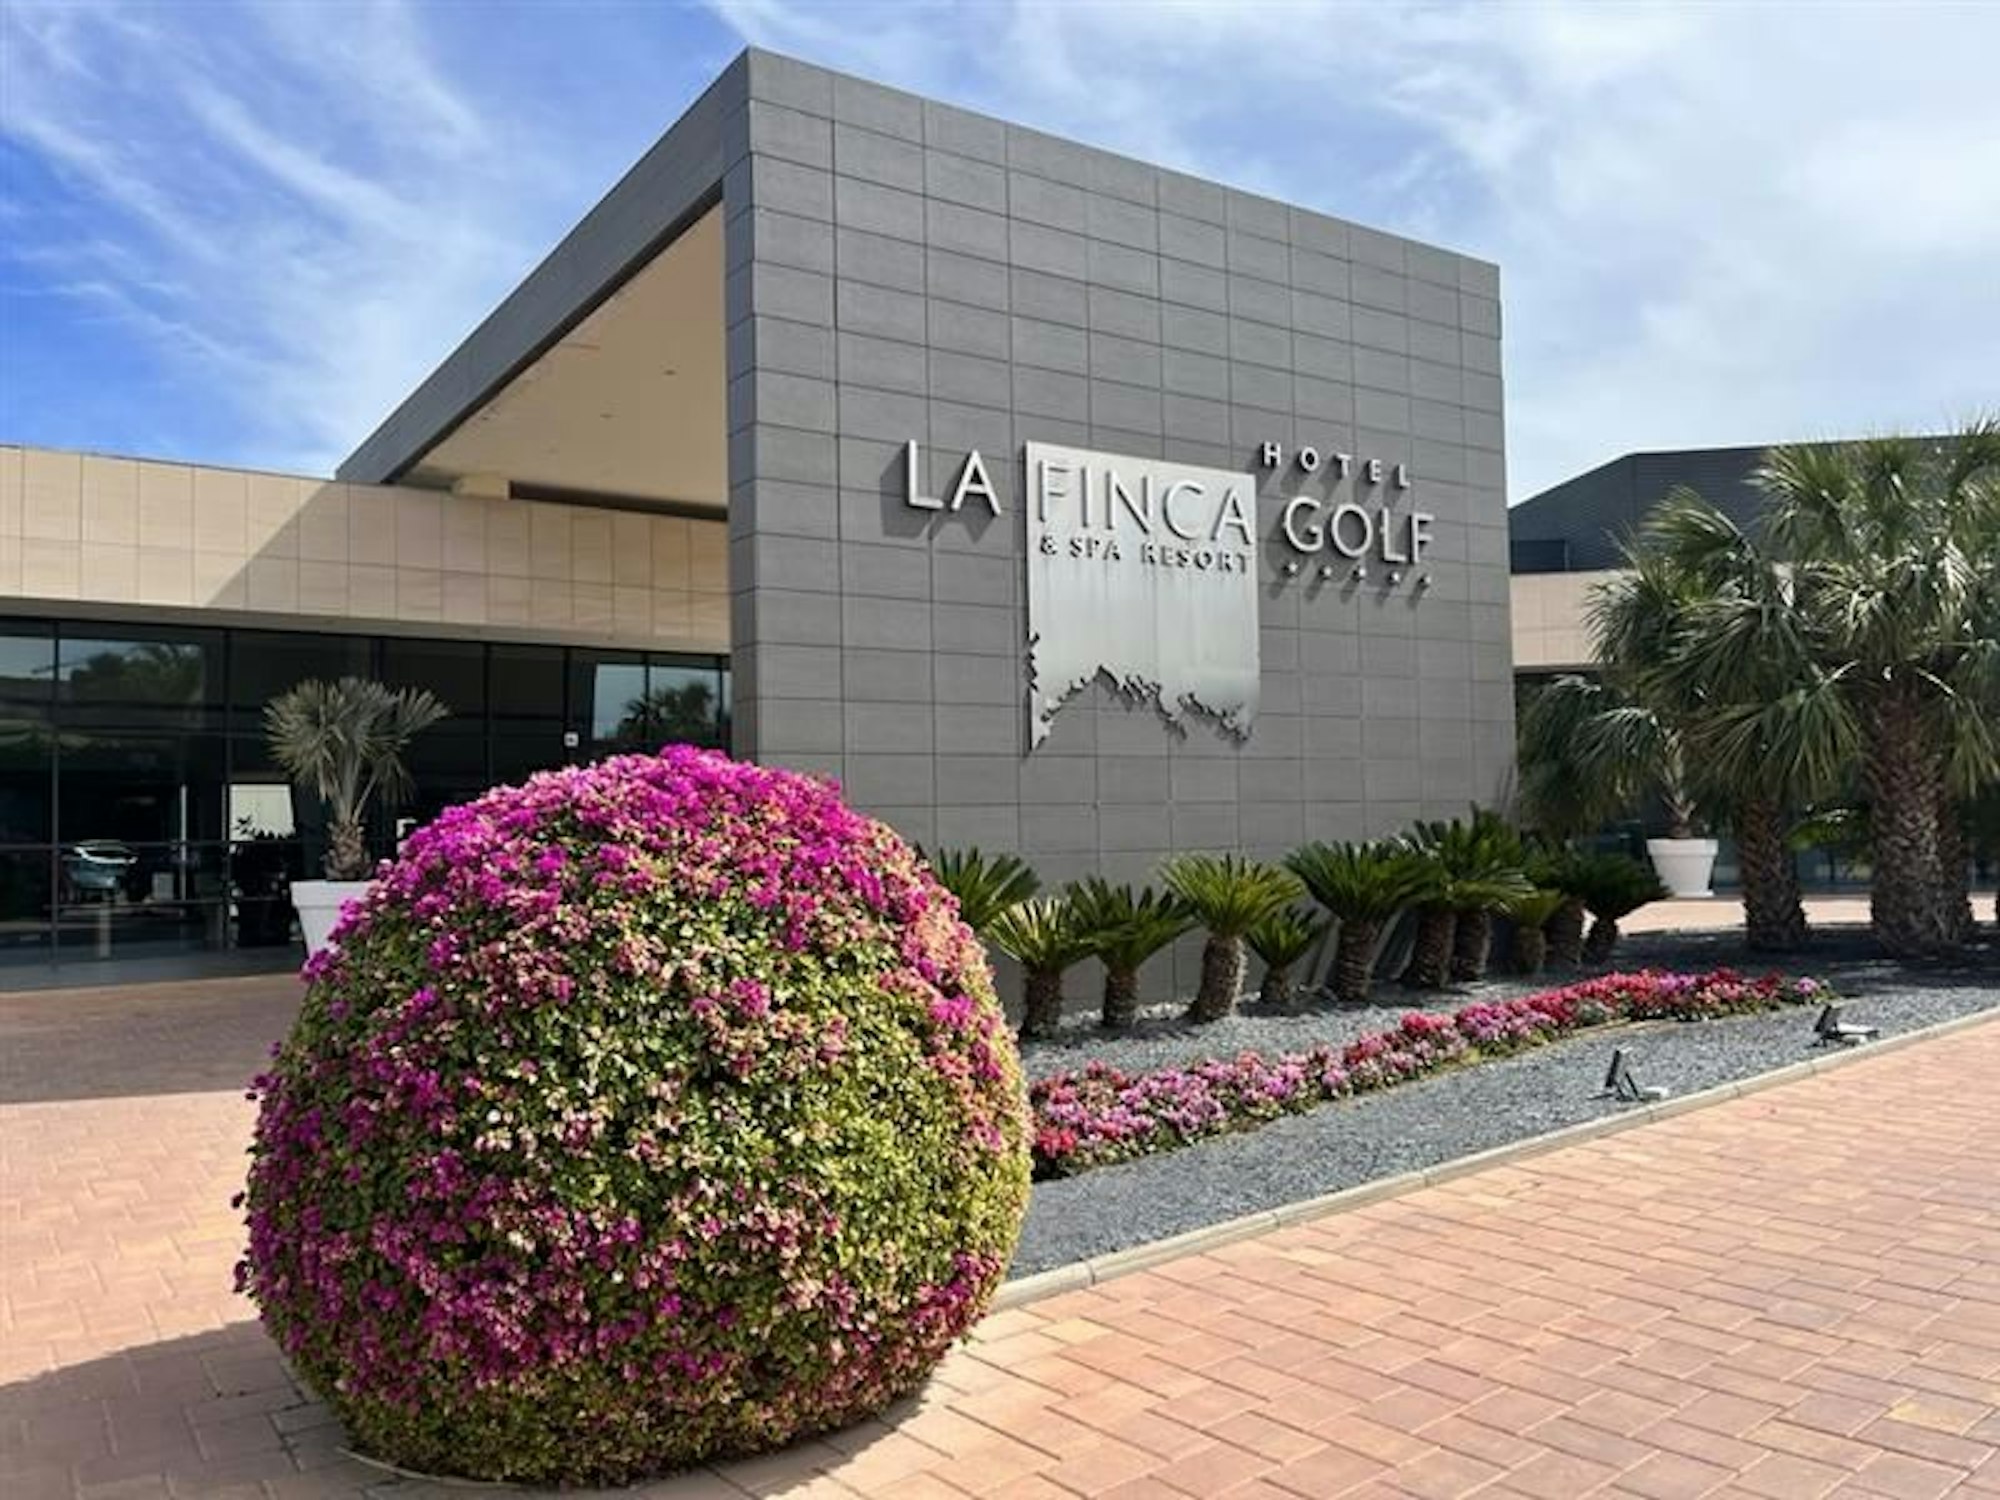 Der Eingang des La Finca Golf & Spa Resorts in Algorfa, Provinz Alicante in Spanien.